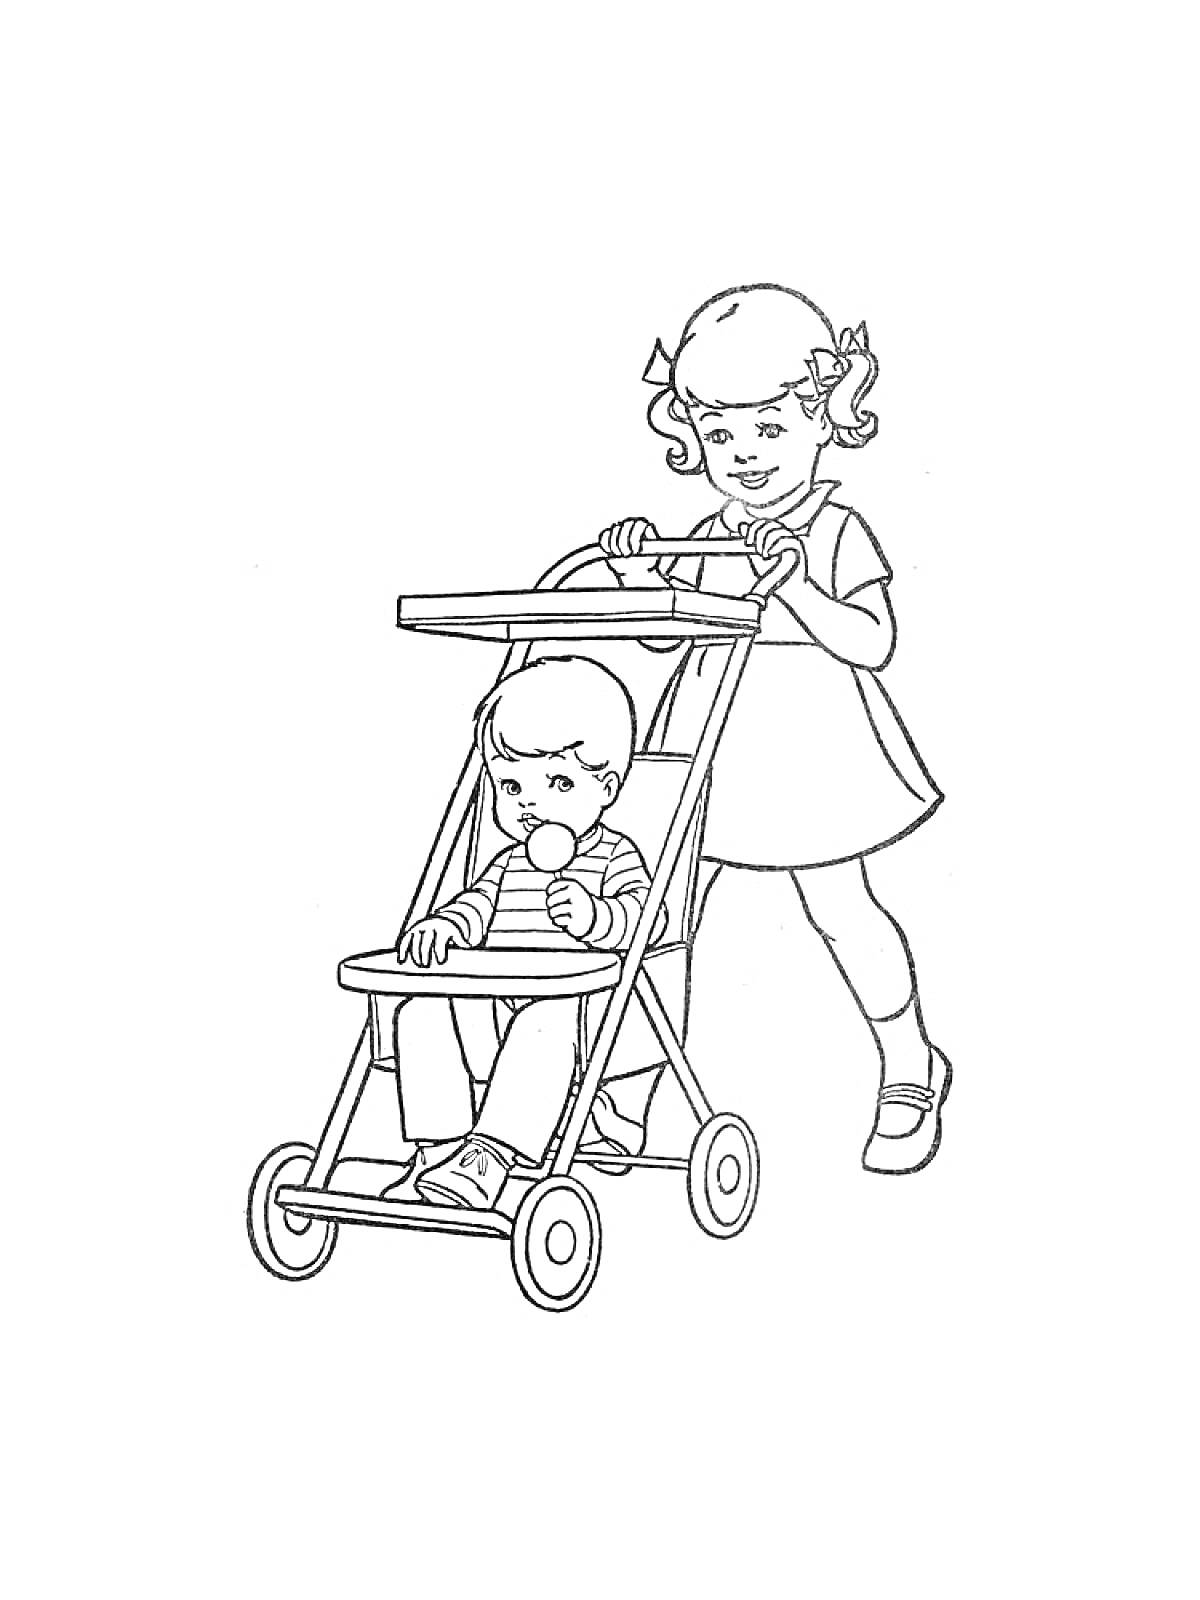 Раскраска Девочка в платье везёт мальчика в коляске, мальчик с игрушкой в руках